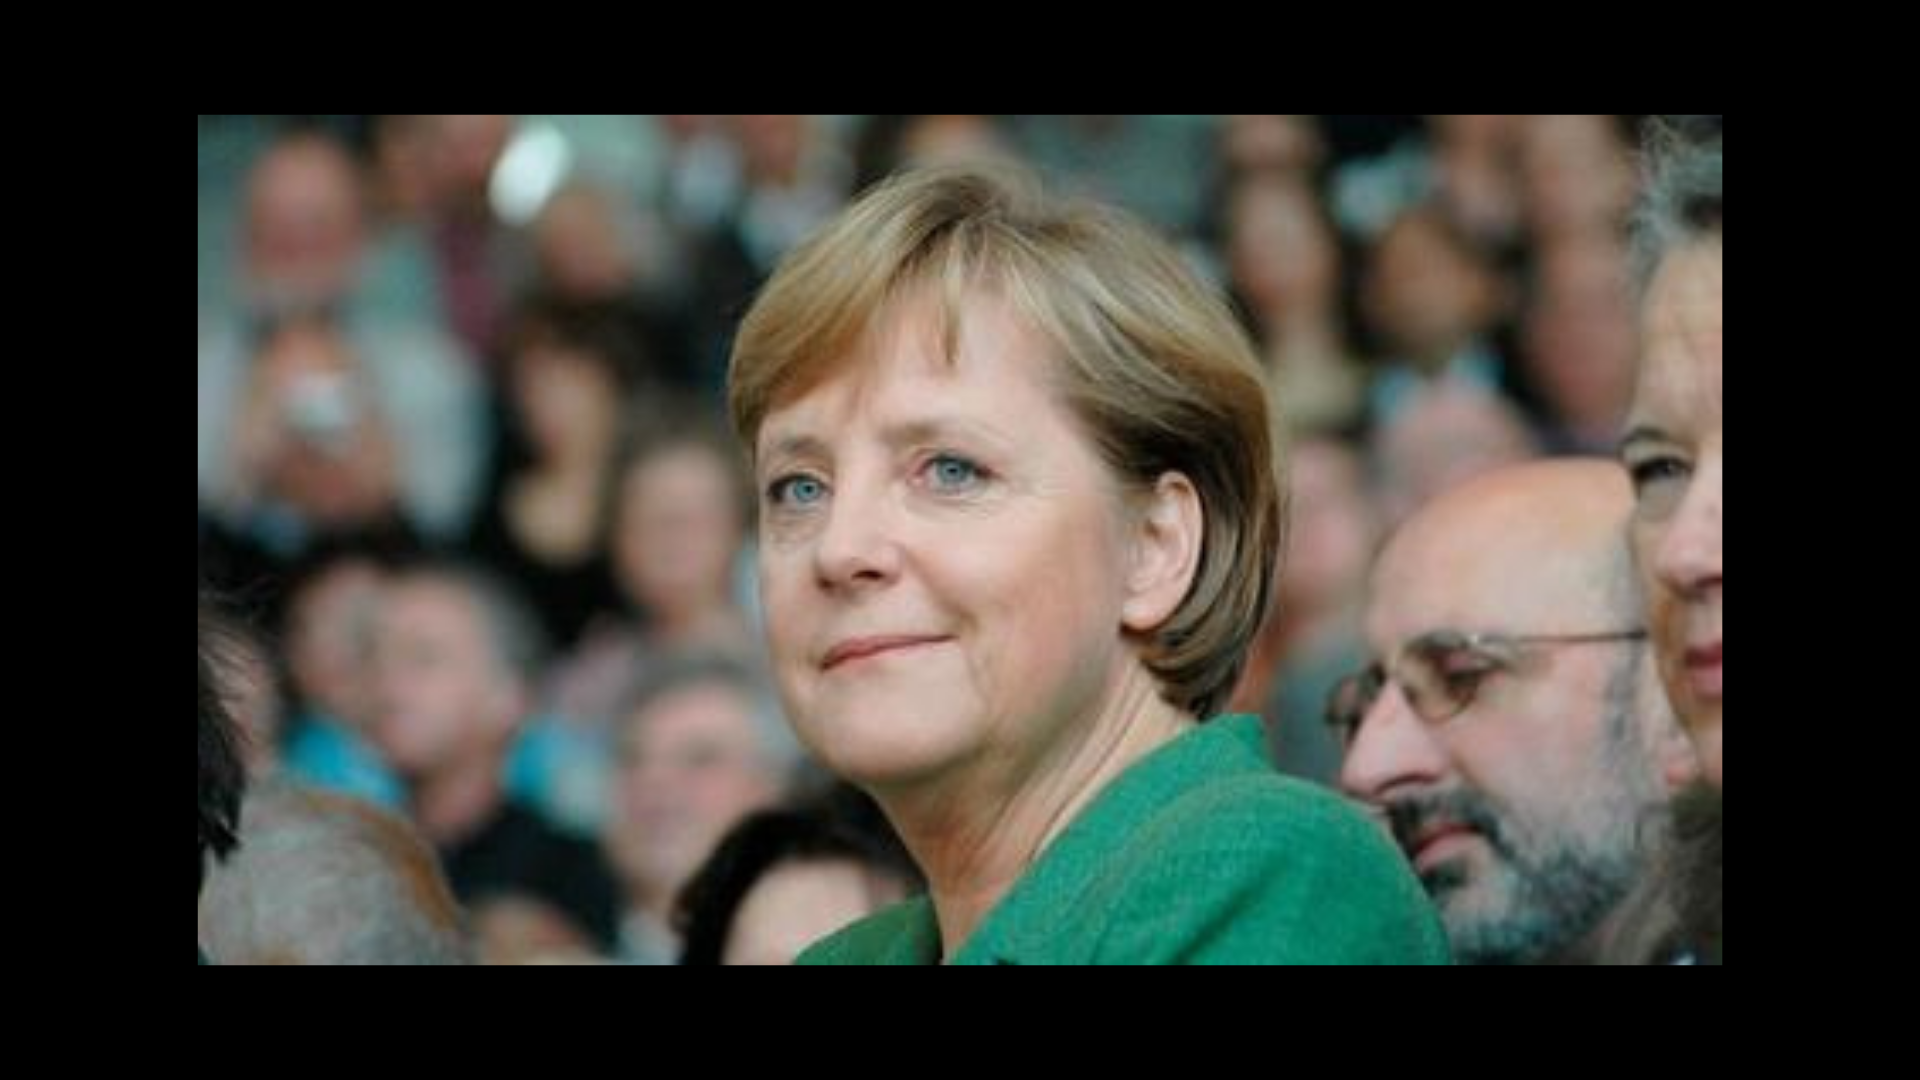 Angela Merkel, the Woman Behind the Veil